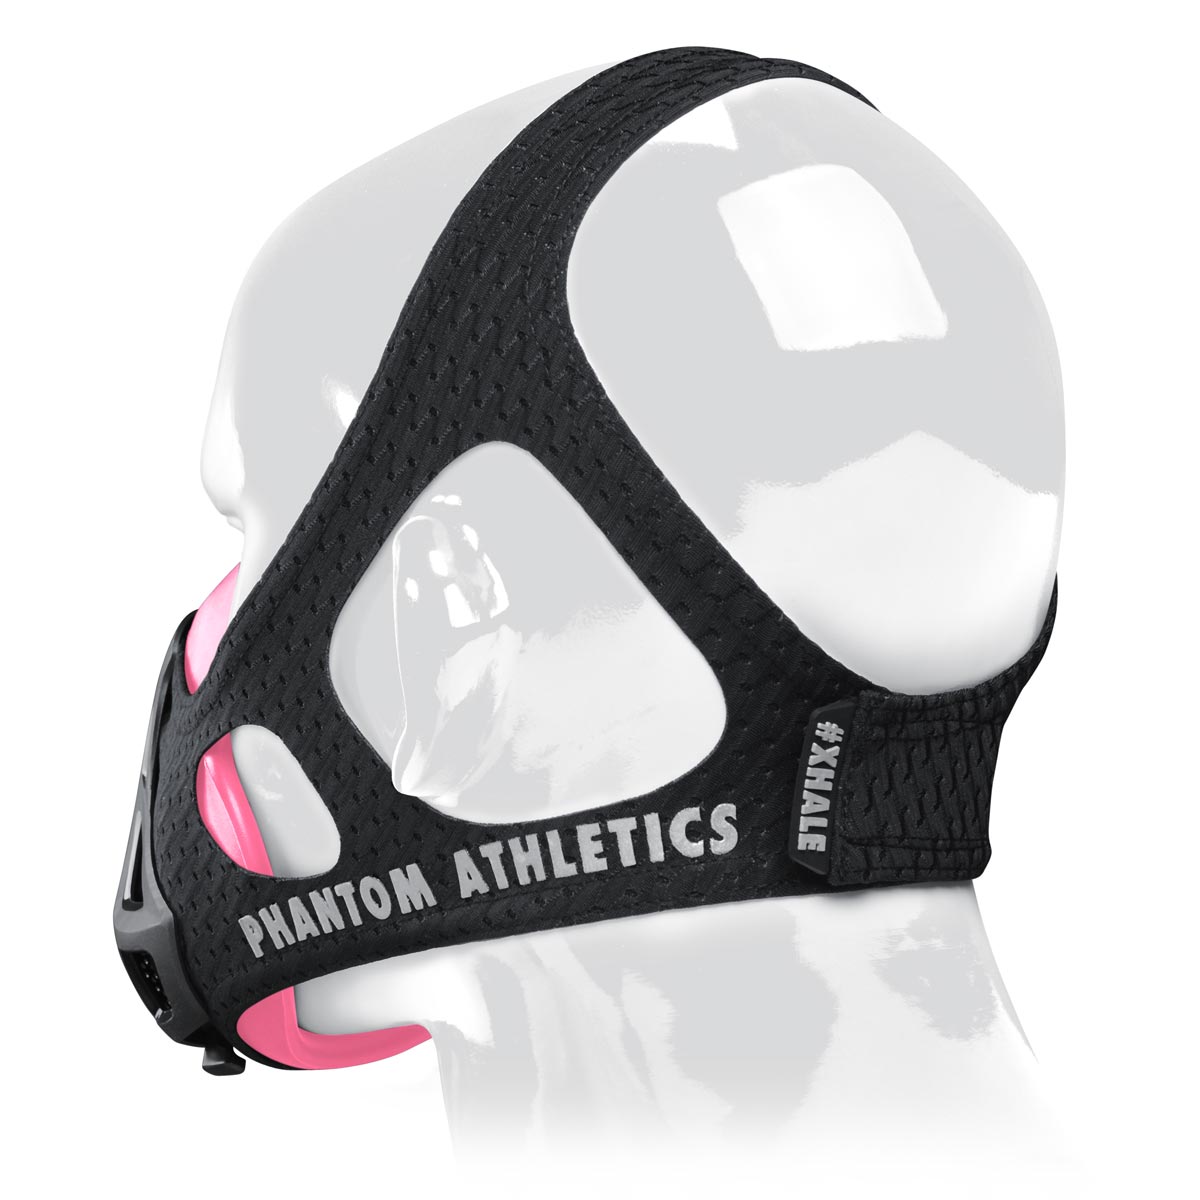 Die Phantom Trainingsmaske verfügt über ein patentiertes Kopfband um dir ein Maximum an Halt im Training zu geben. Jetzt in der Farbe Pink/Schwarz.